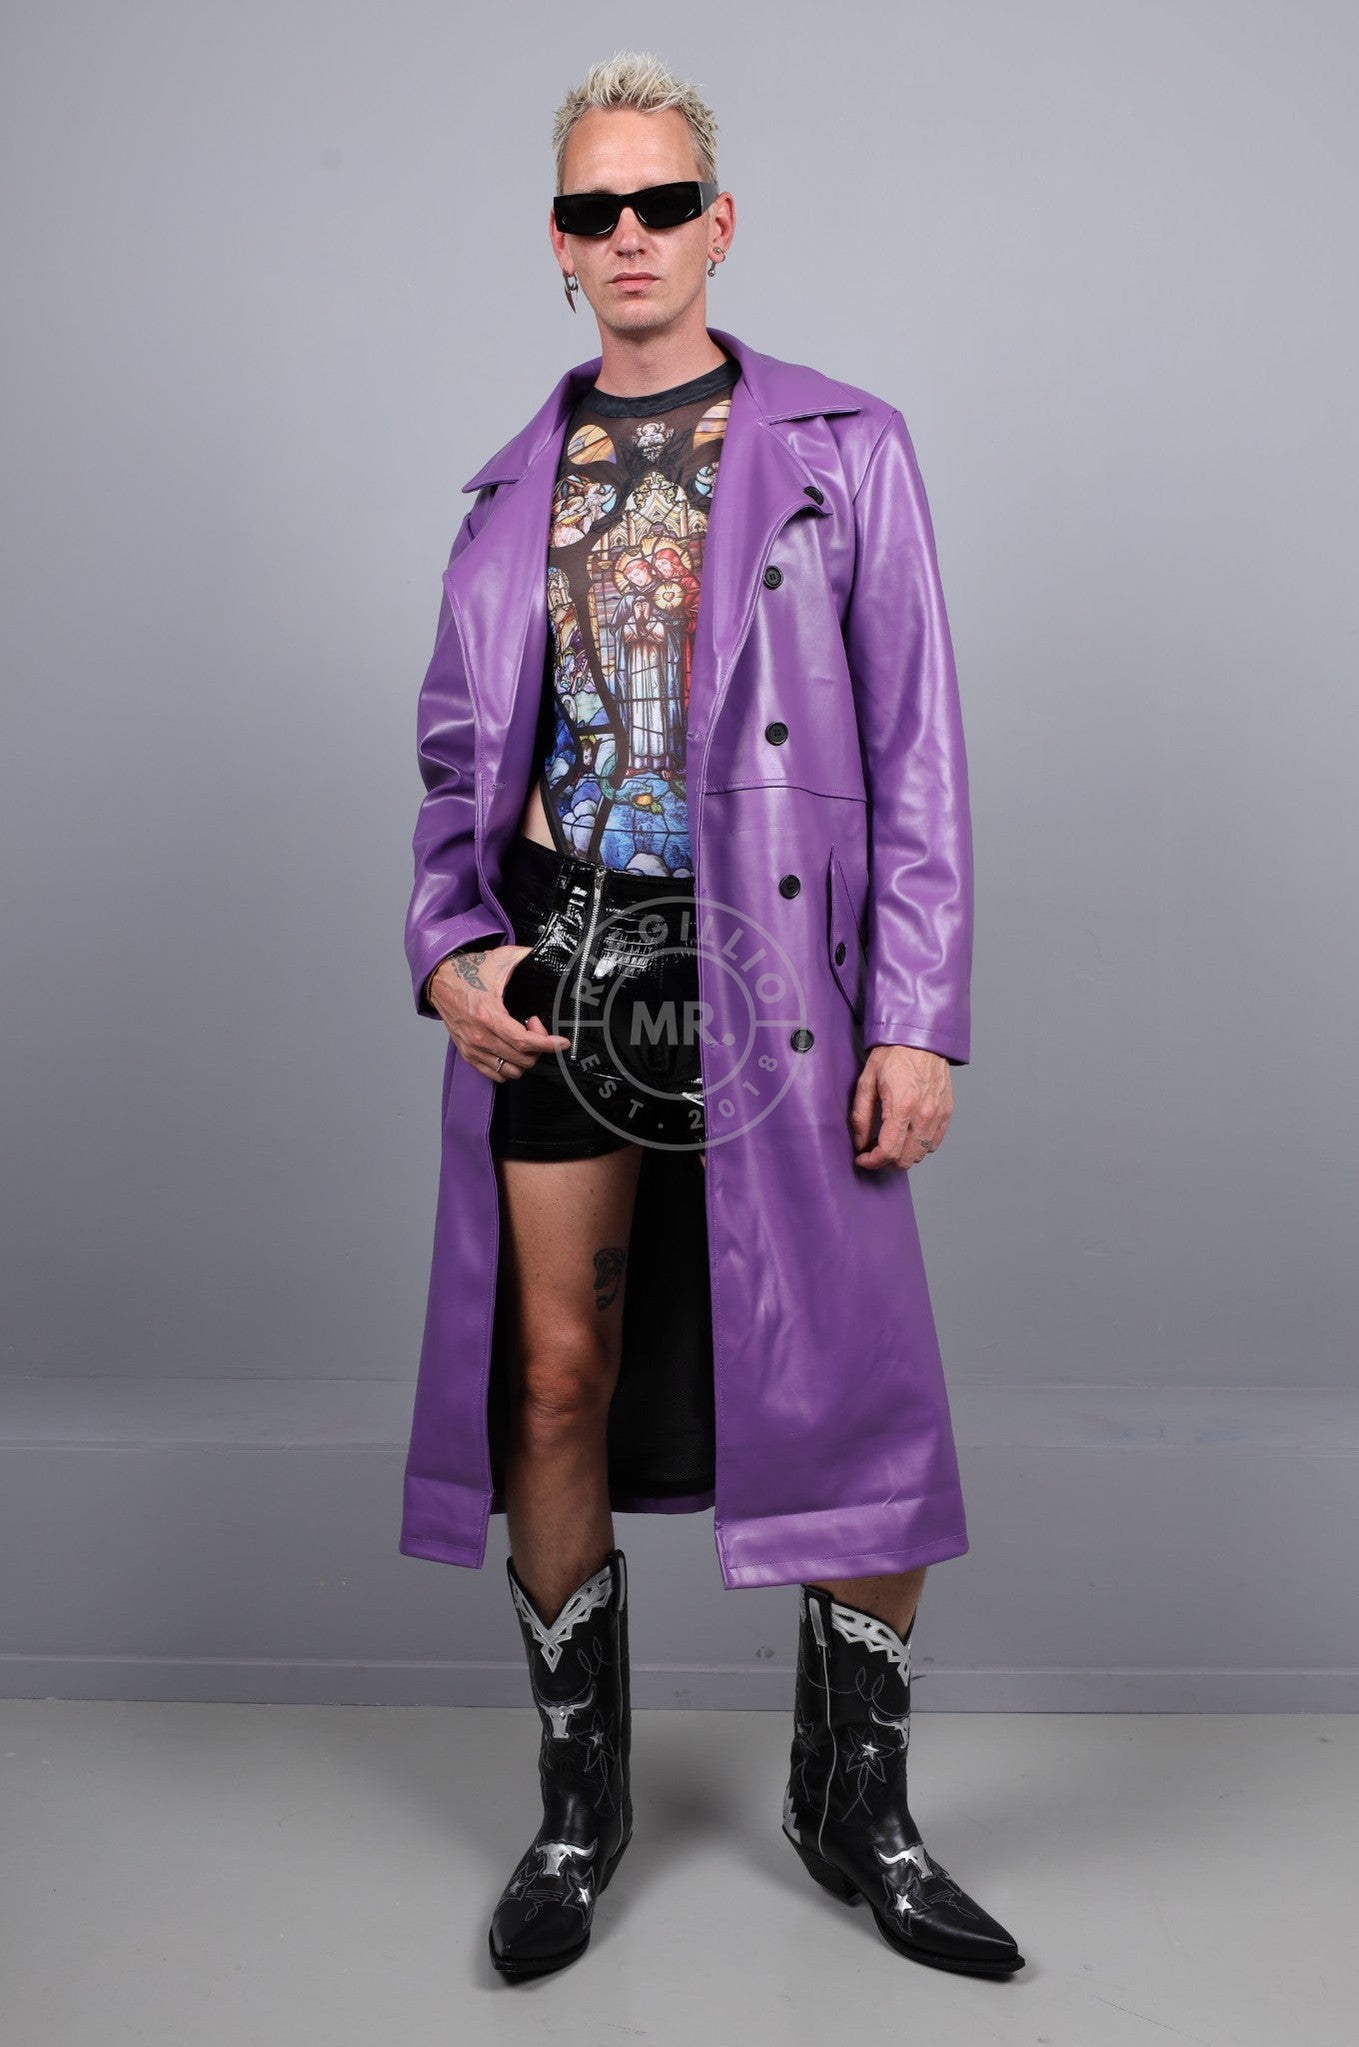 MR. Trench Coat - Neon Purple at MR. Riegillio